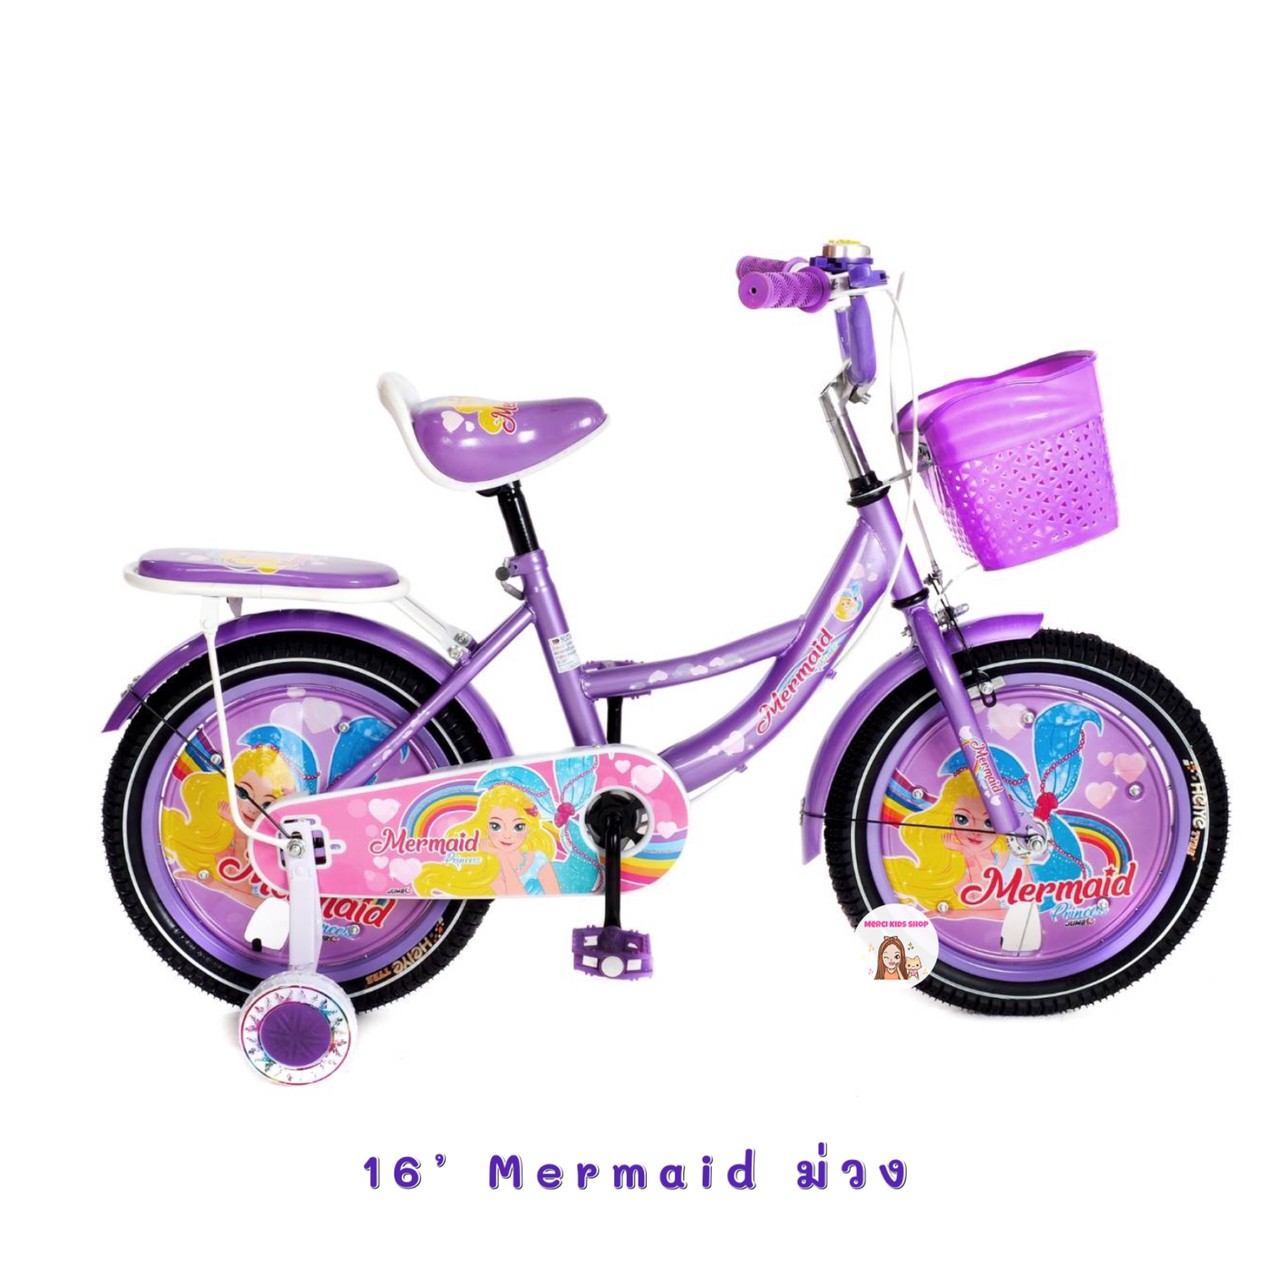 🔥จักรยานเด็ก 16นิ้ว นางเงือก 161616 เจ้าหญิง รถจักรยานเด็ก จักรยานราคาถูก จักรยานเจ้าหญิง เจ้าหญิงเงือก no. 2142